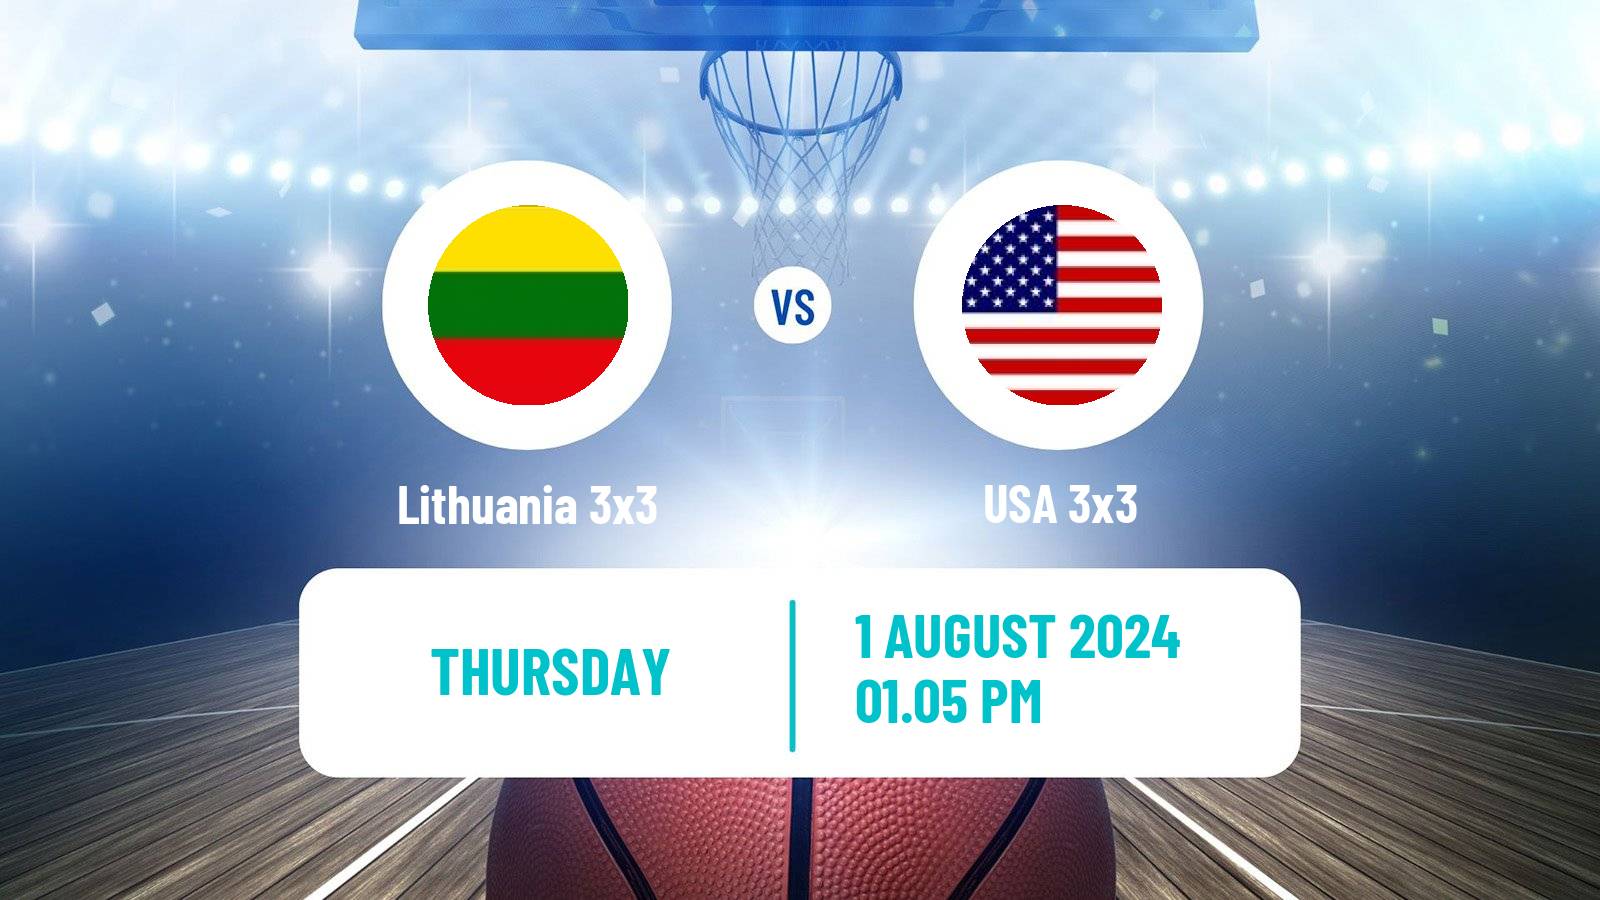 Basketball Olympic Games Basketball 3x3 Lithuania 3x3 - USA 3x3